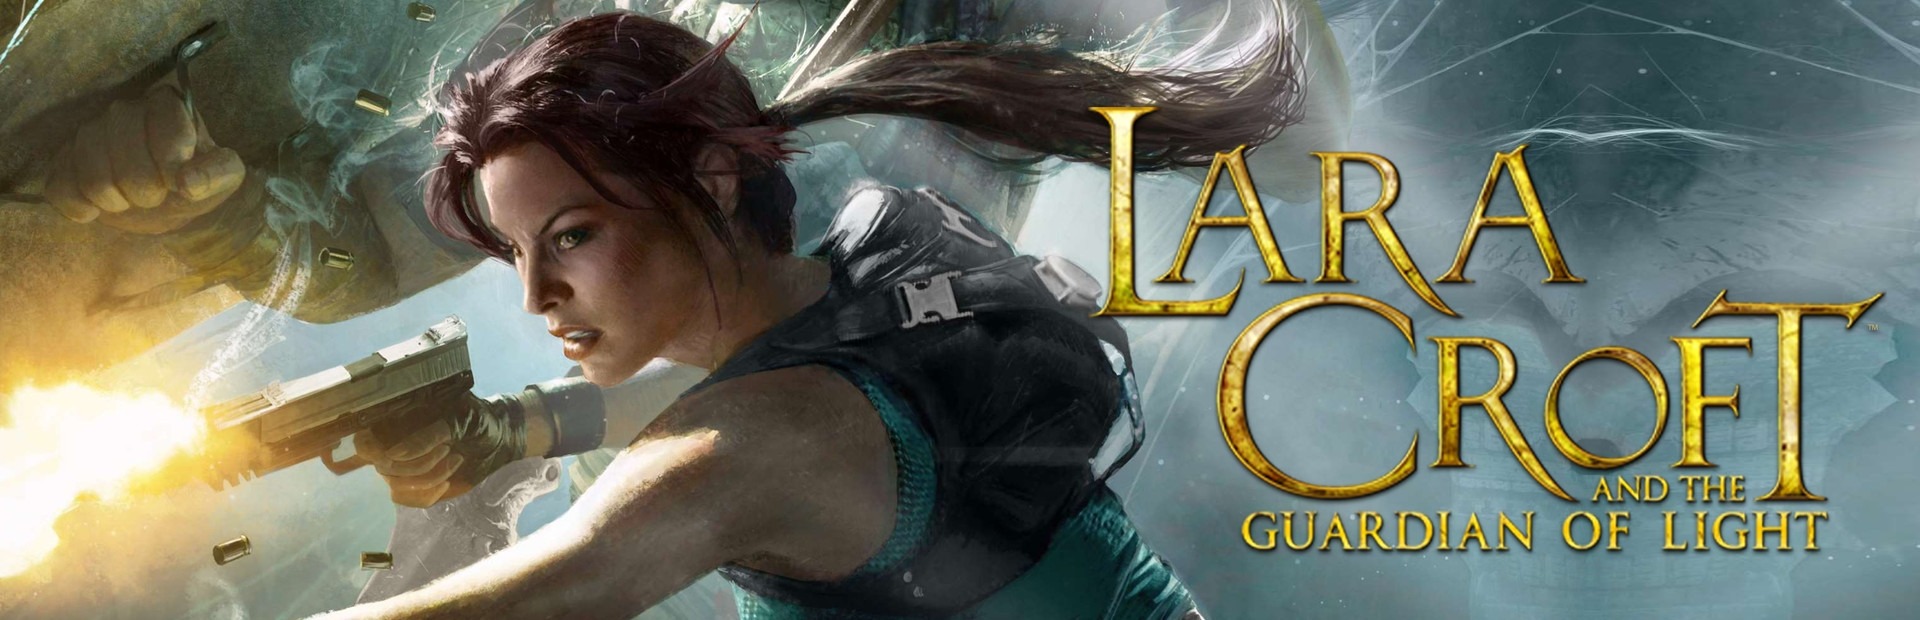 Buy Lara Guardian of Light Steam